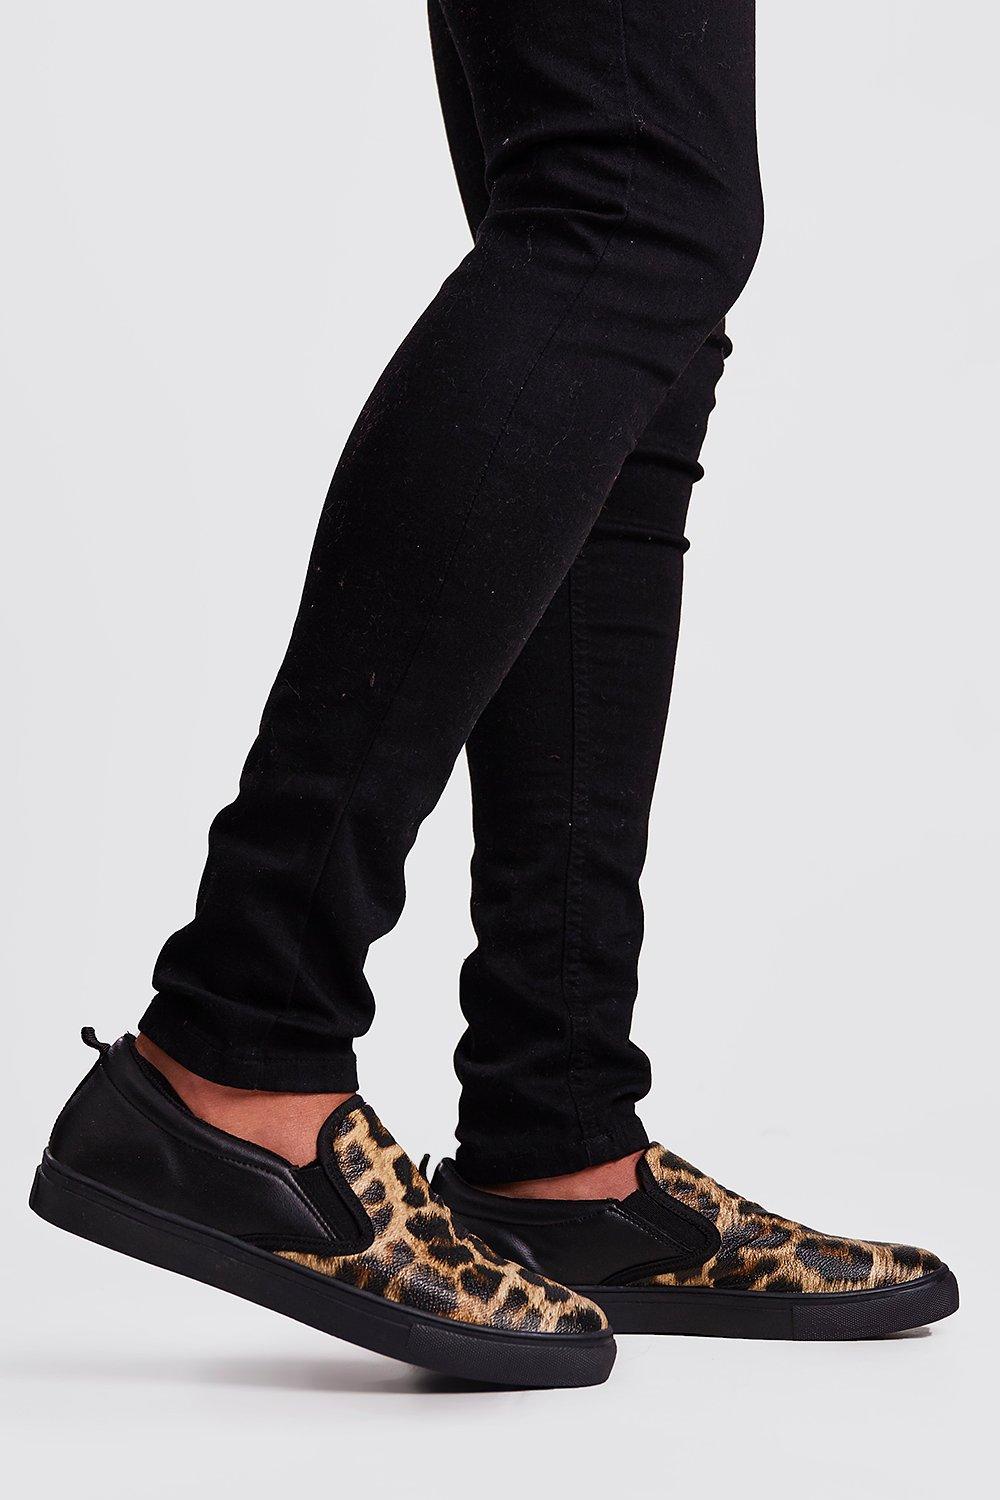 scarpe ginnastica leopardate